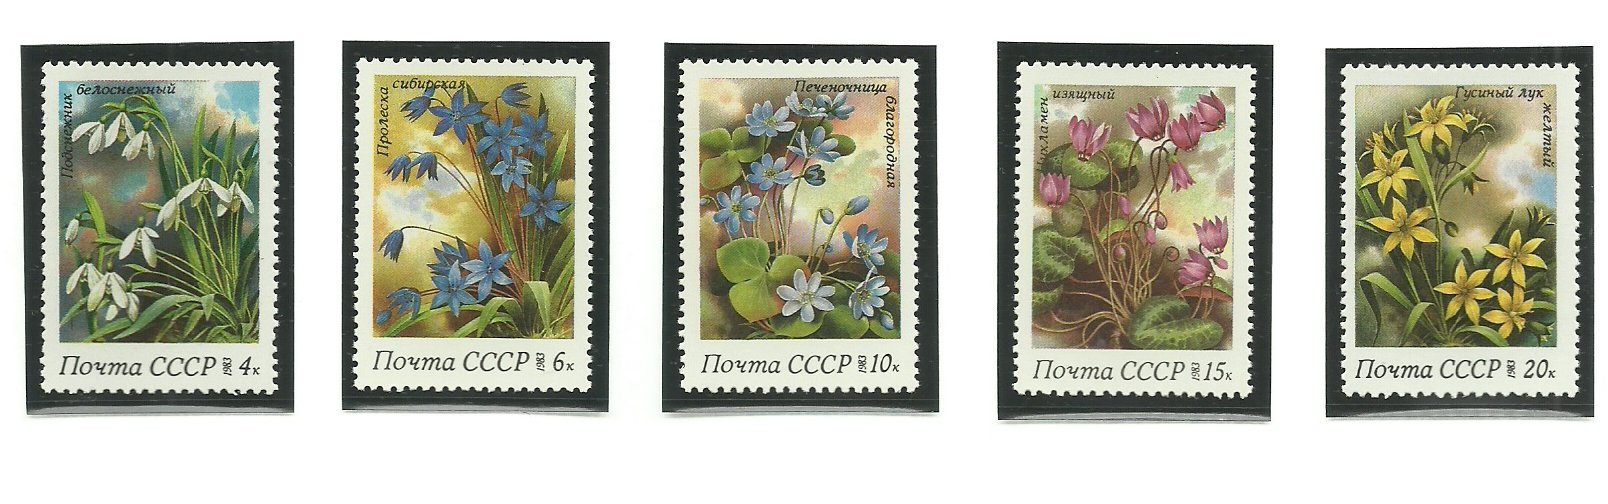 URSS 1983 - flori de camp, serie neuzata